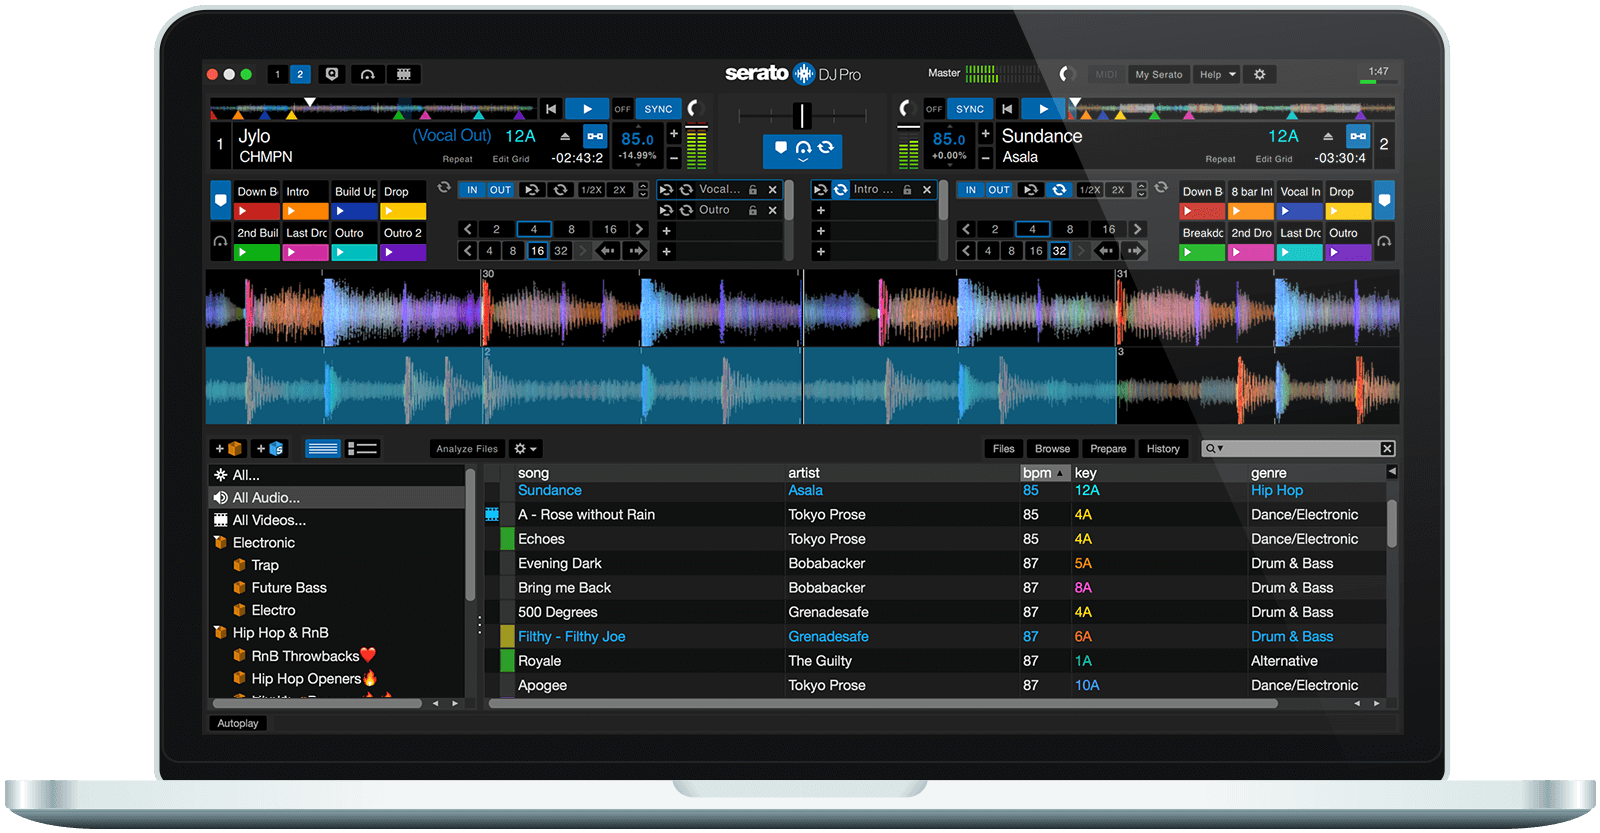 Serato DJ Pro 3.0.10.164 download the new for windows